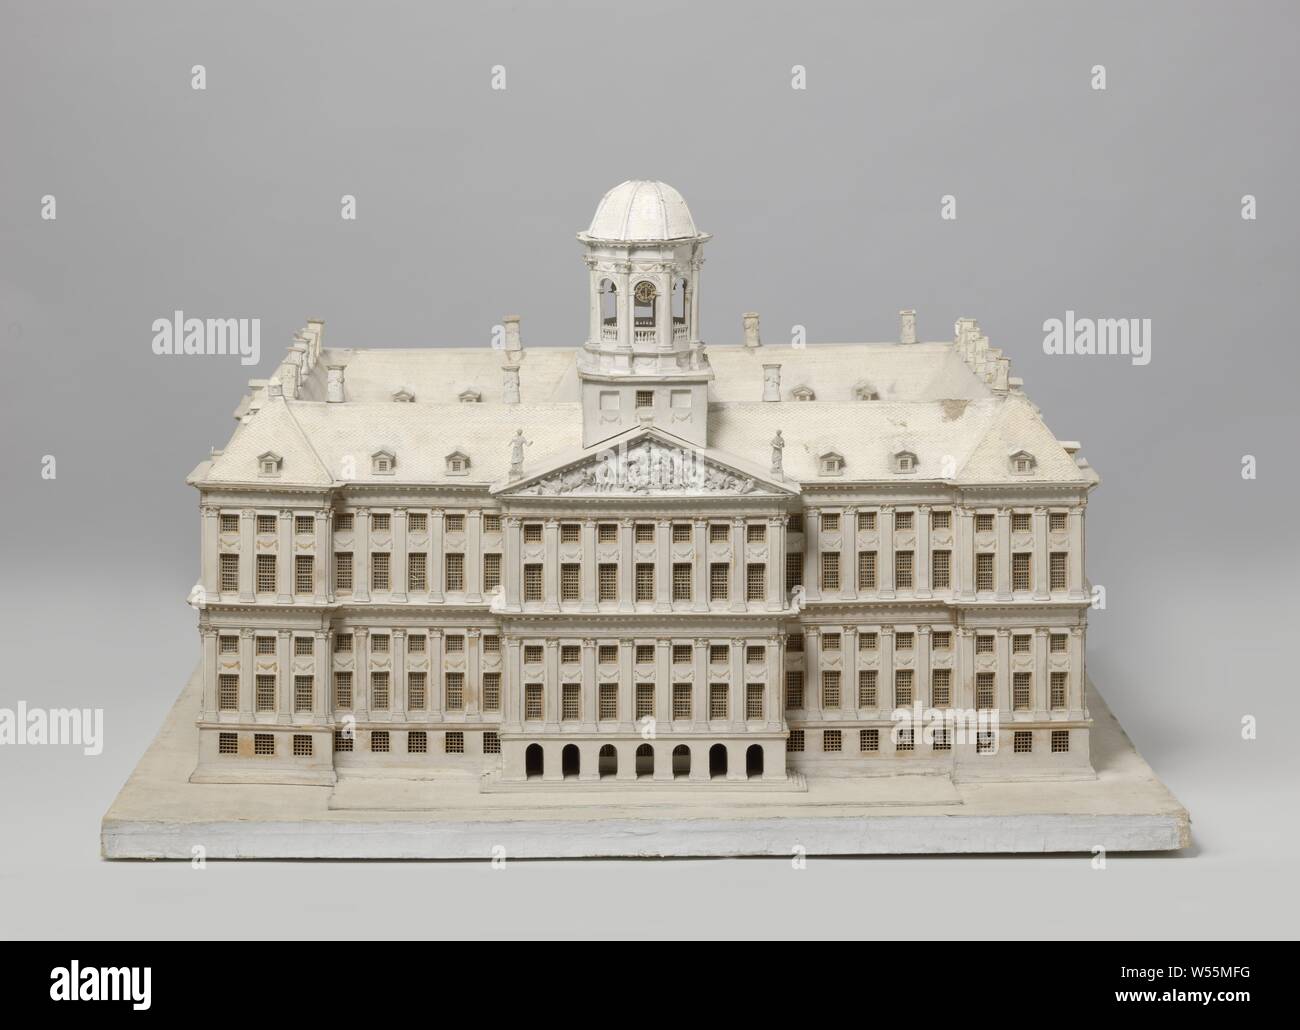 Modelo del palacio en el Dam, modelo pintado de blanco del palacio en el  Dam, hecho de cartón. El modelo es una meseta de roble y caoba en que el  modelo está